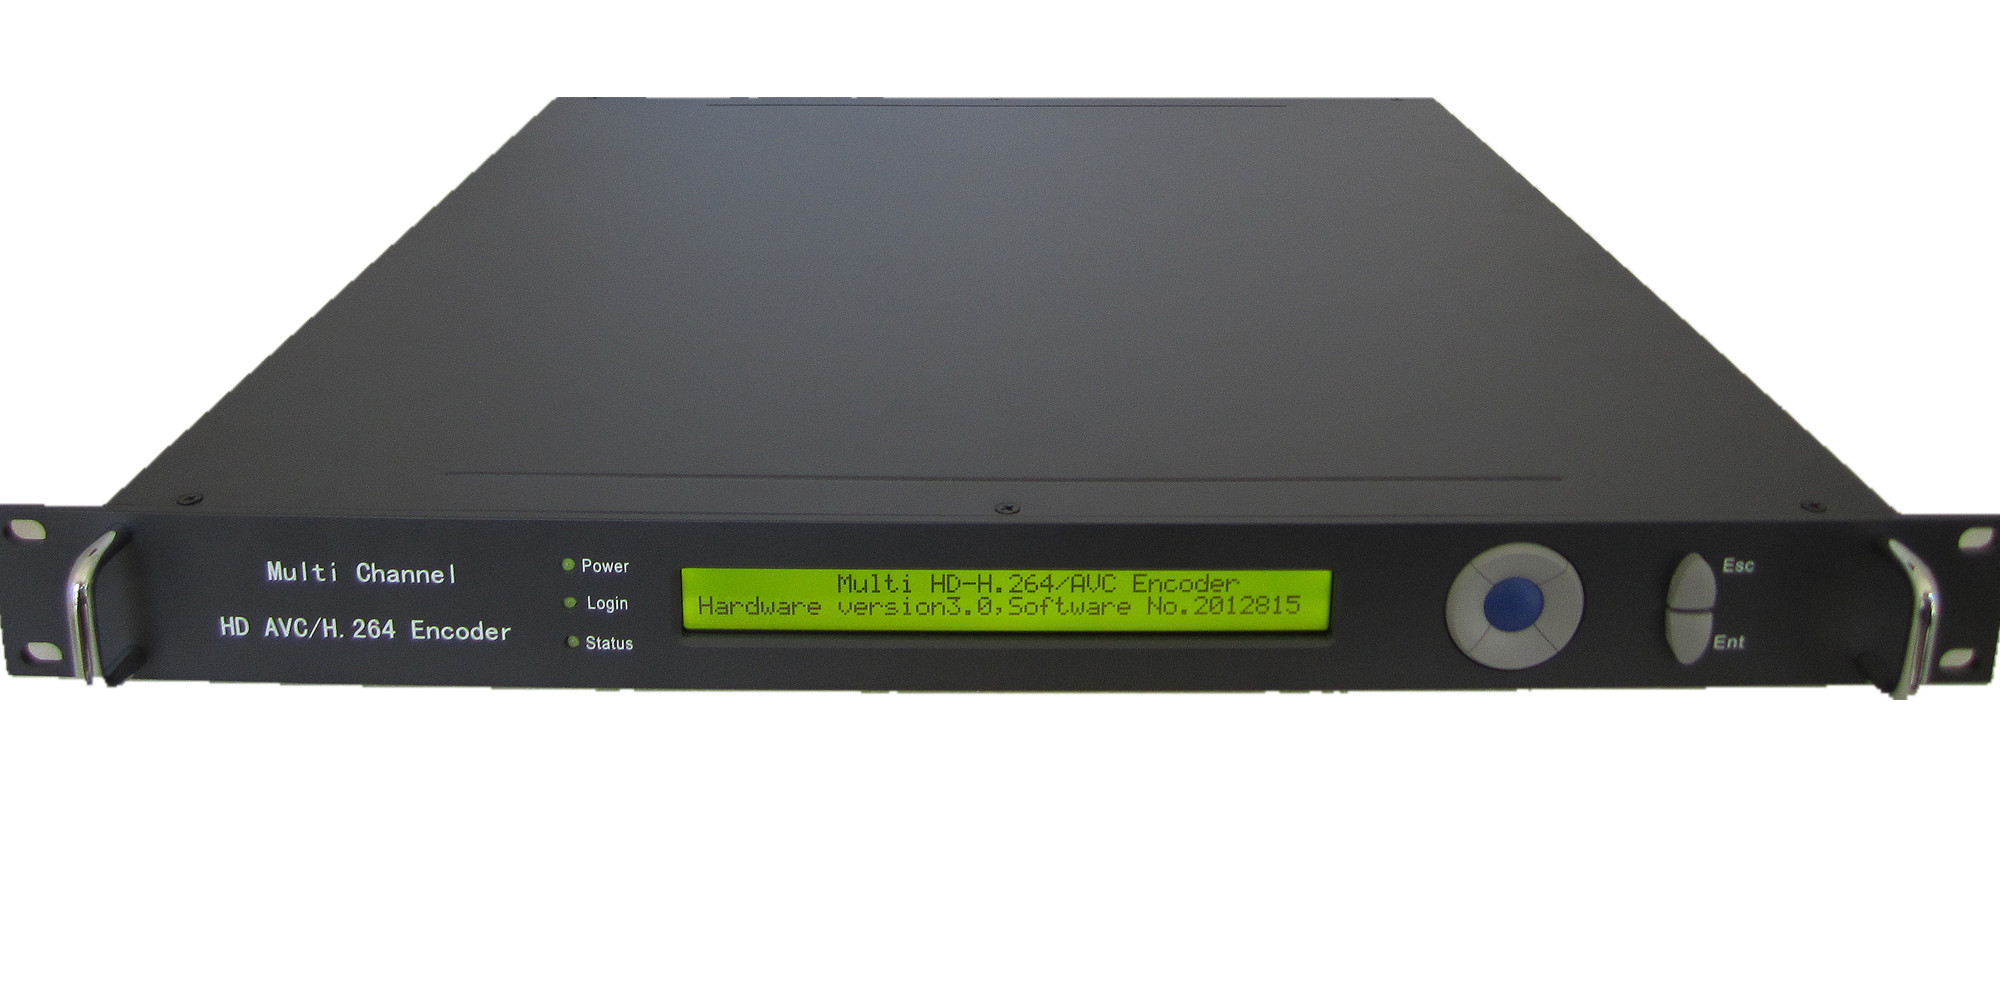 Codificador IP HP902D 4 en 1 Flash HD compatible con el protocolo HTTP/RTMP/RTP/RTSP/UDP